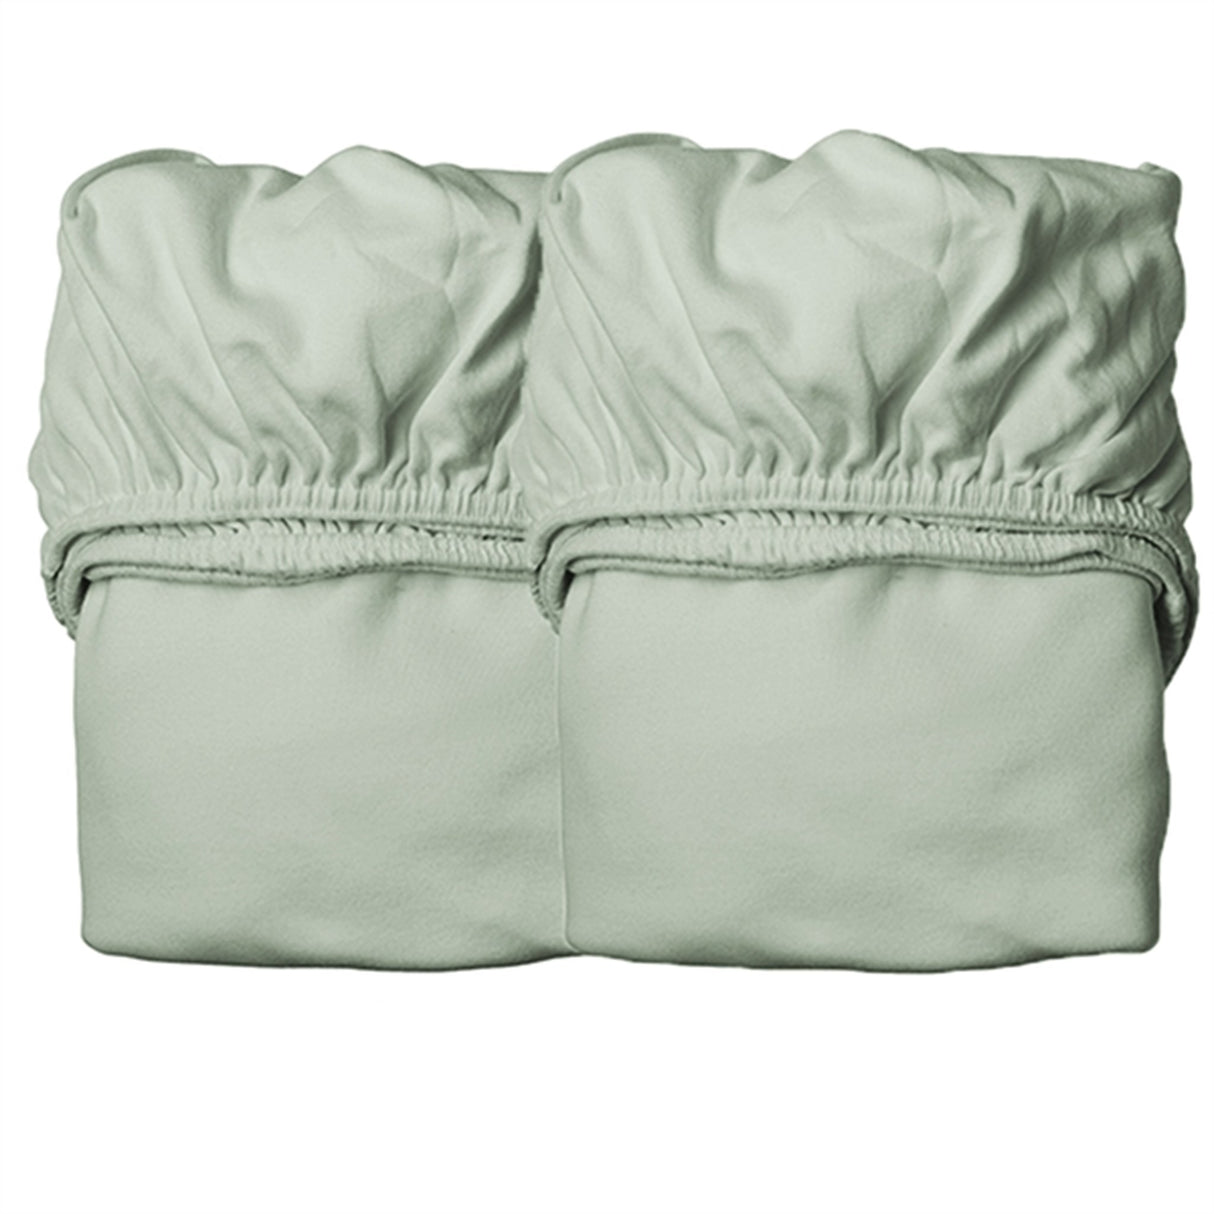 Leander Sheet for Baby Bed 2-Pack Sage Green